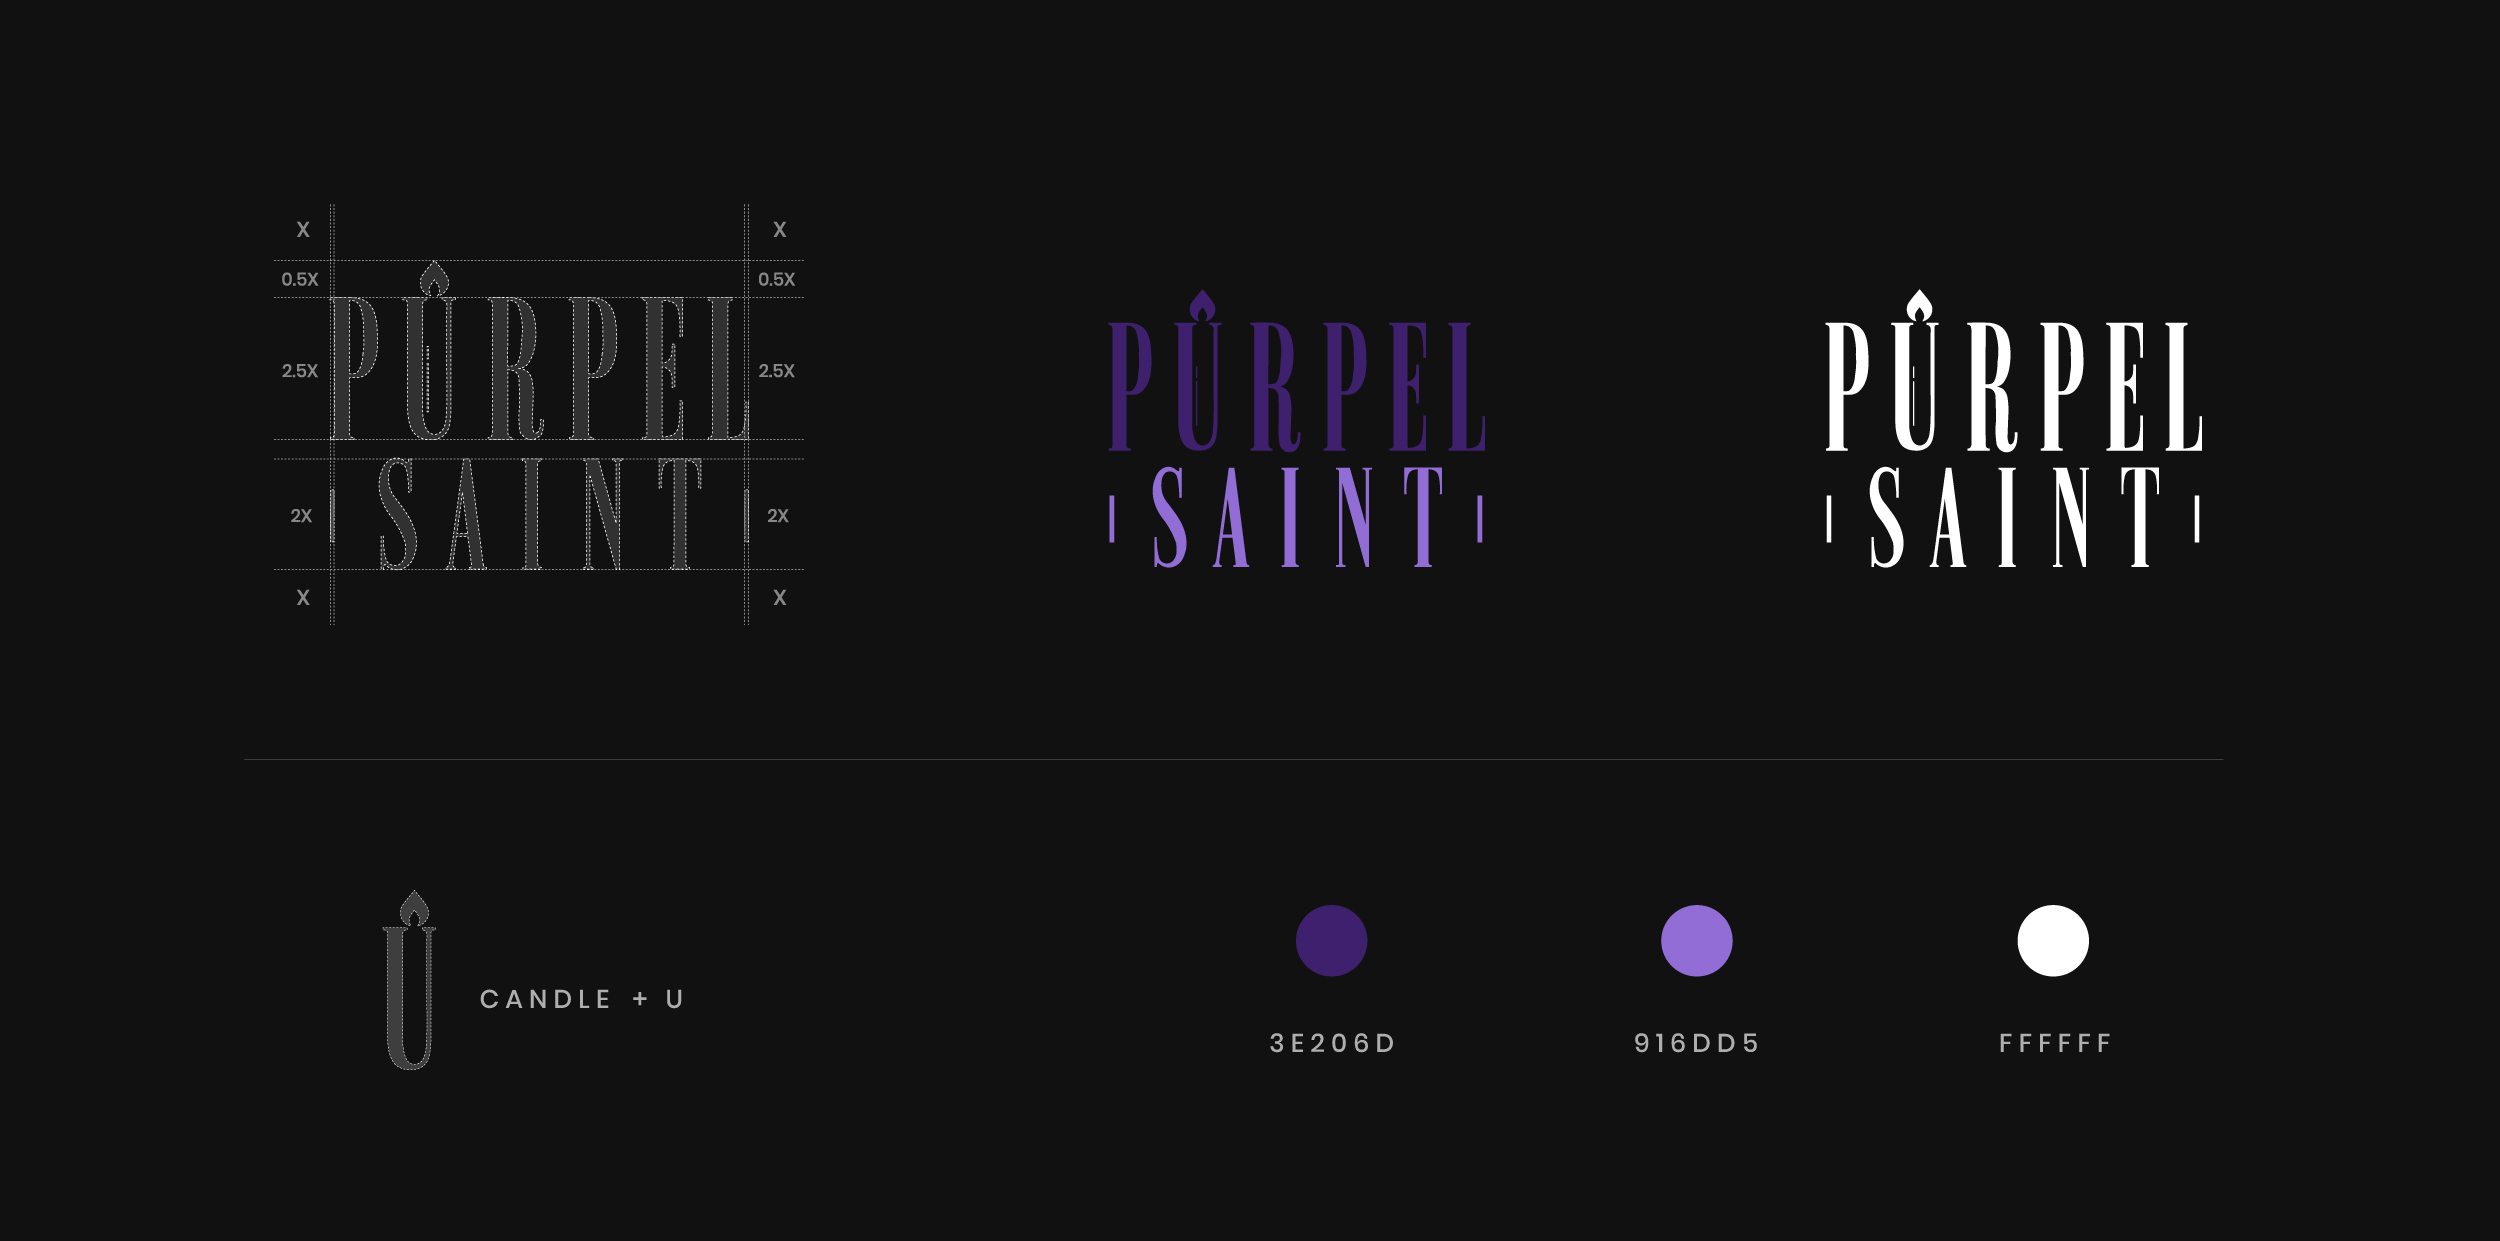 Purpel Saint Branding Concept and color palette